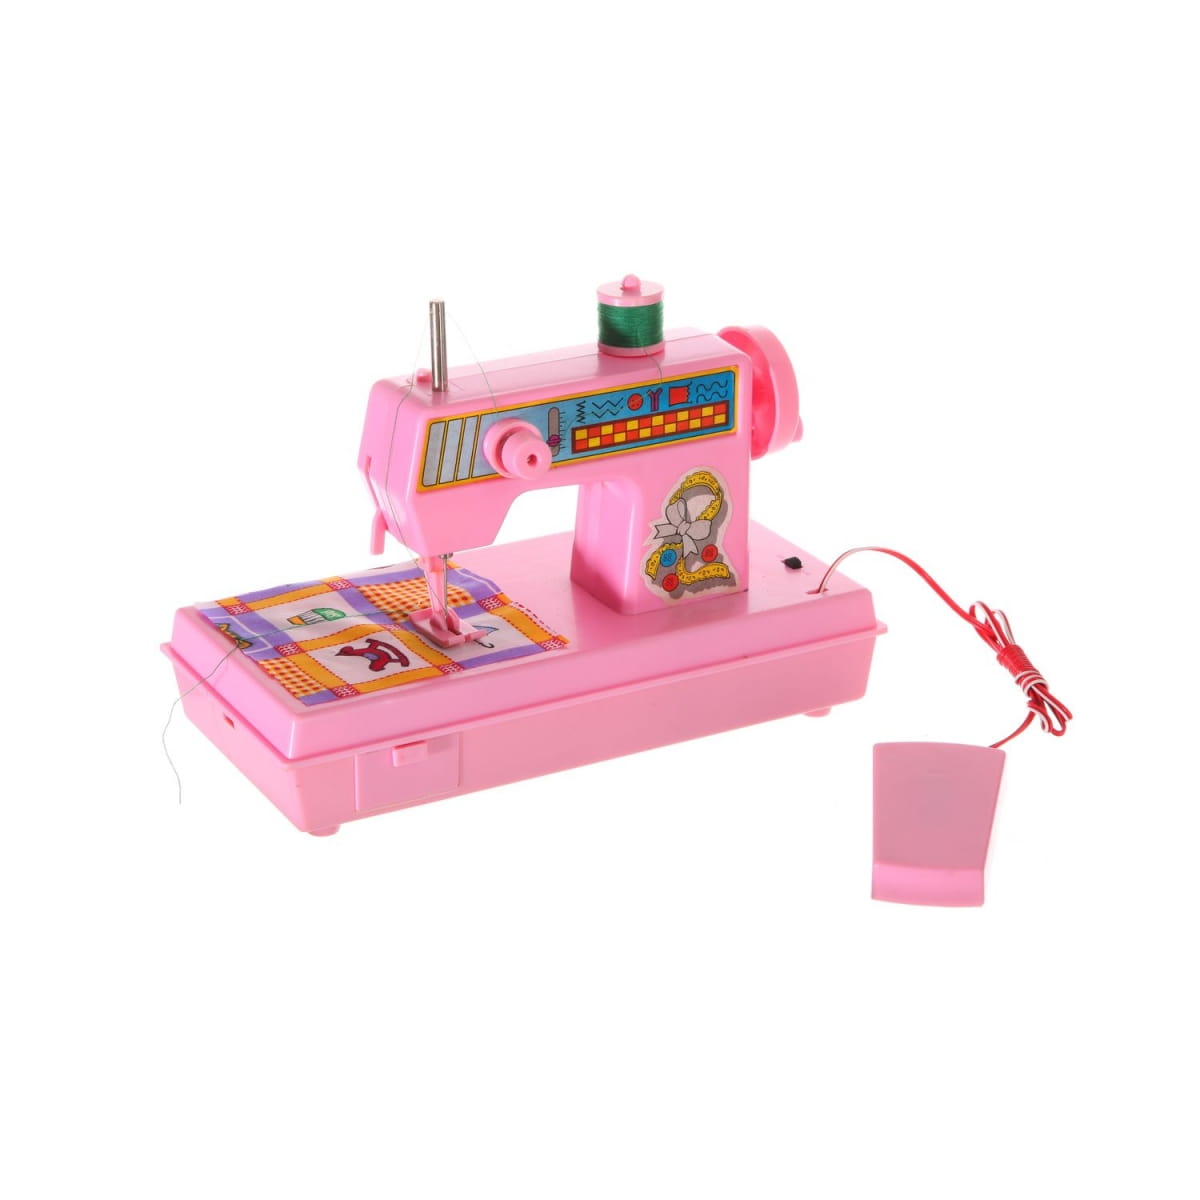    Shenzhen Toys Sewing Machine